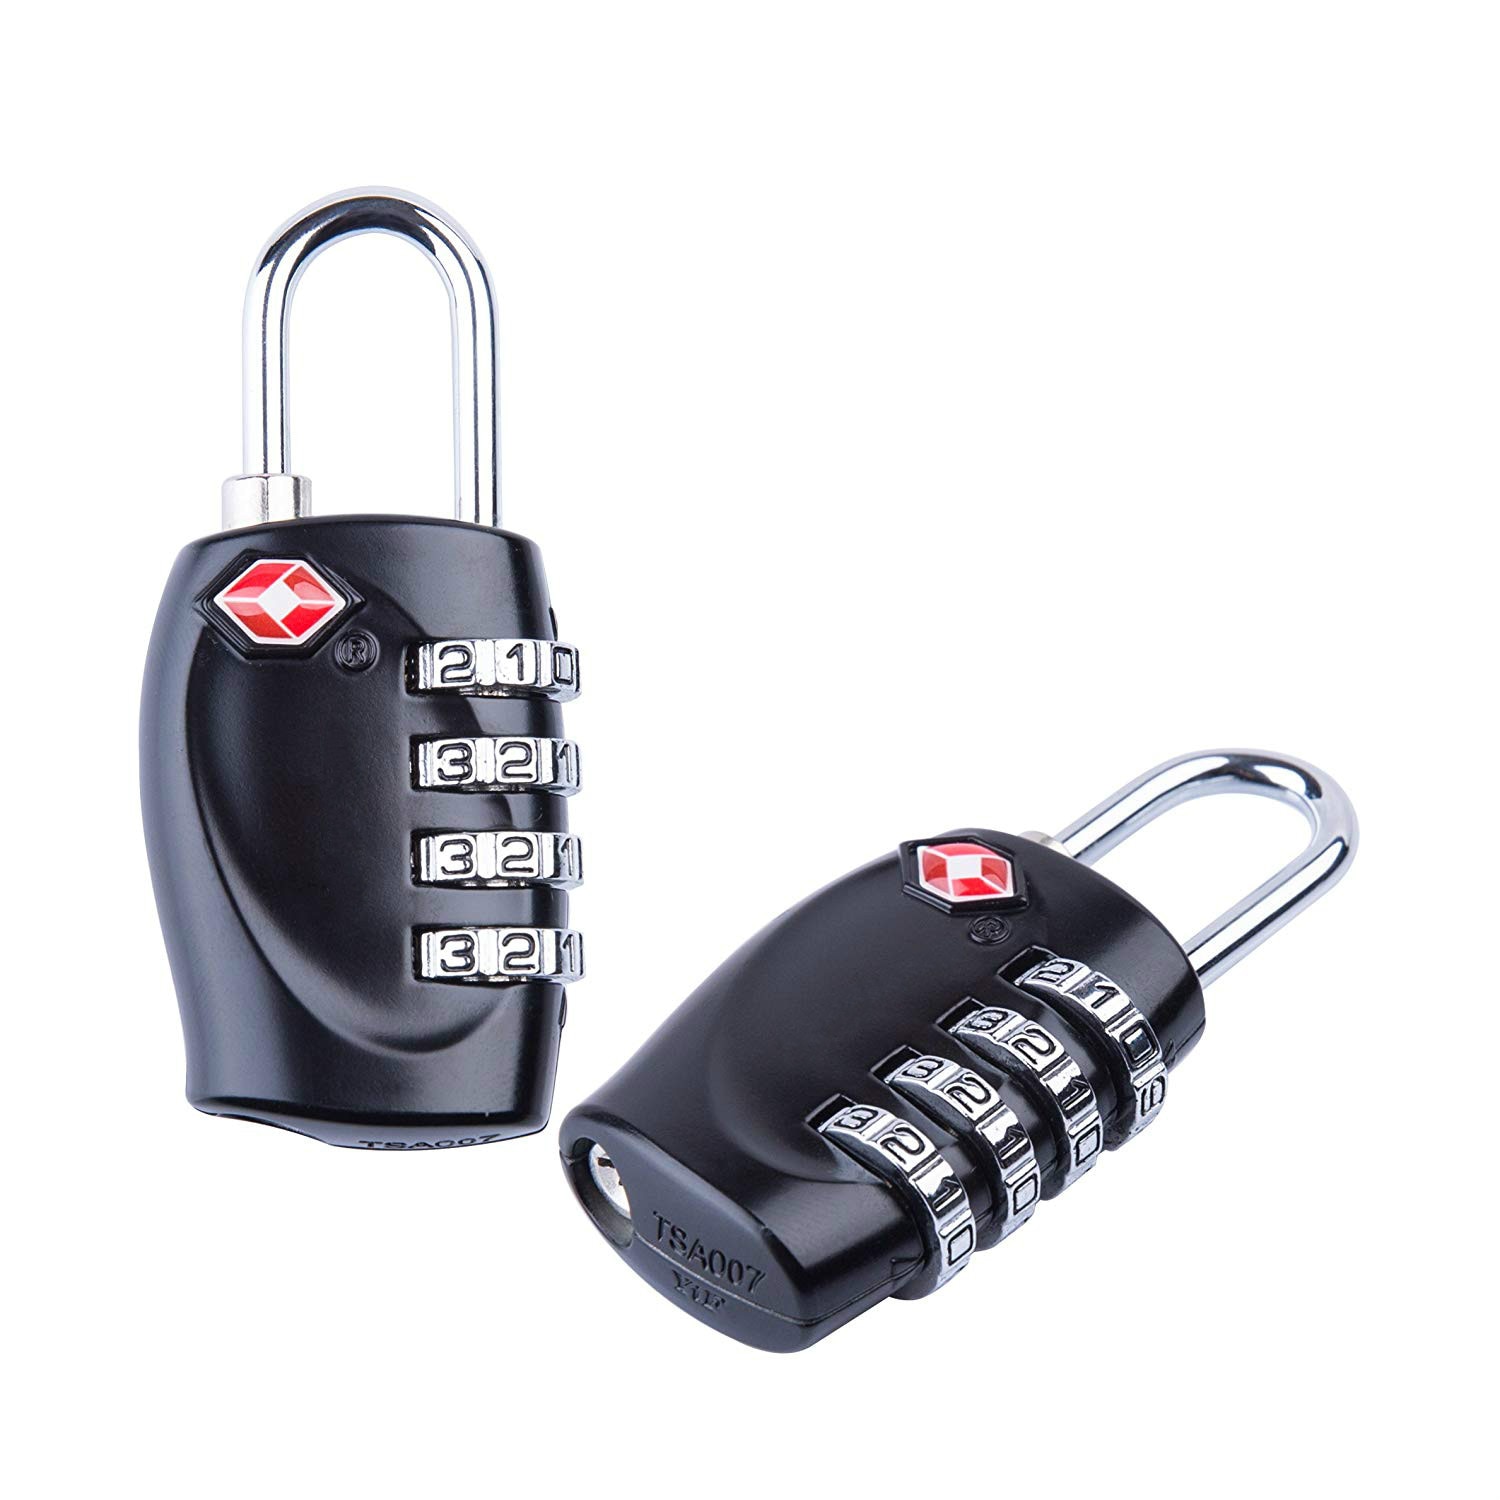 Tsa Hangslot 3 Digit Combinatie Lock Beveiliging Wachtwoord Reizen Lock Anti-Diefstal Sloten Voor Gym/Locker/School /Koffer & Bagage